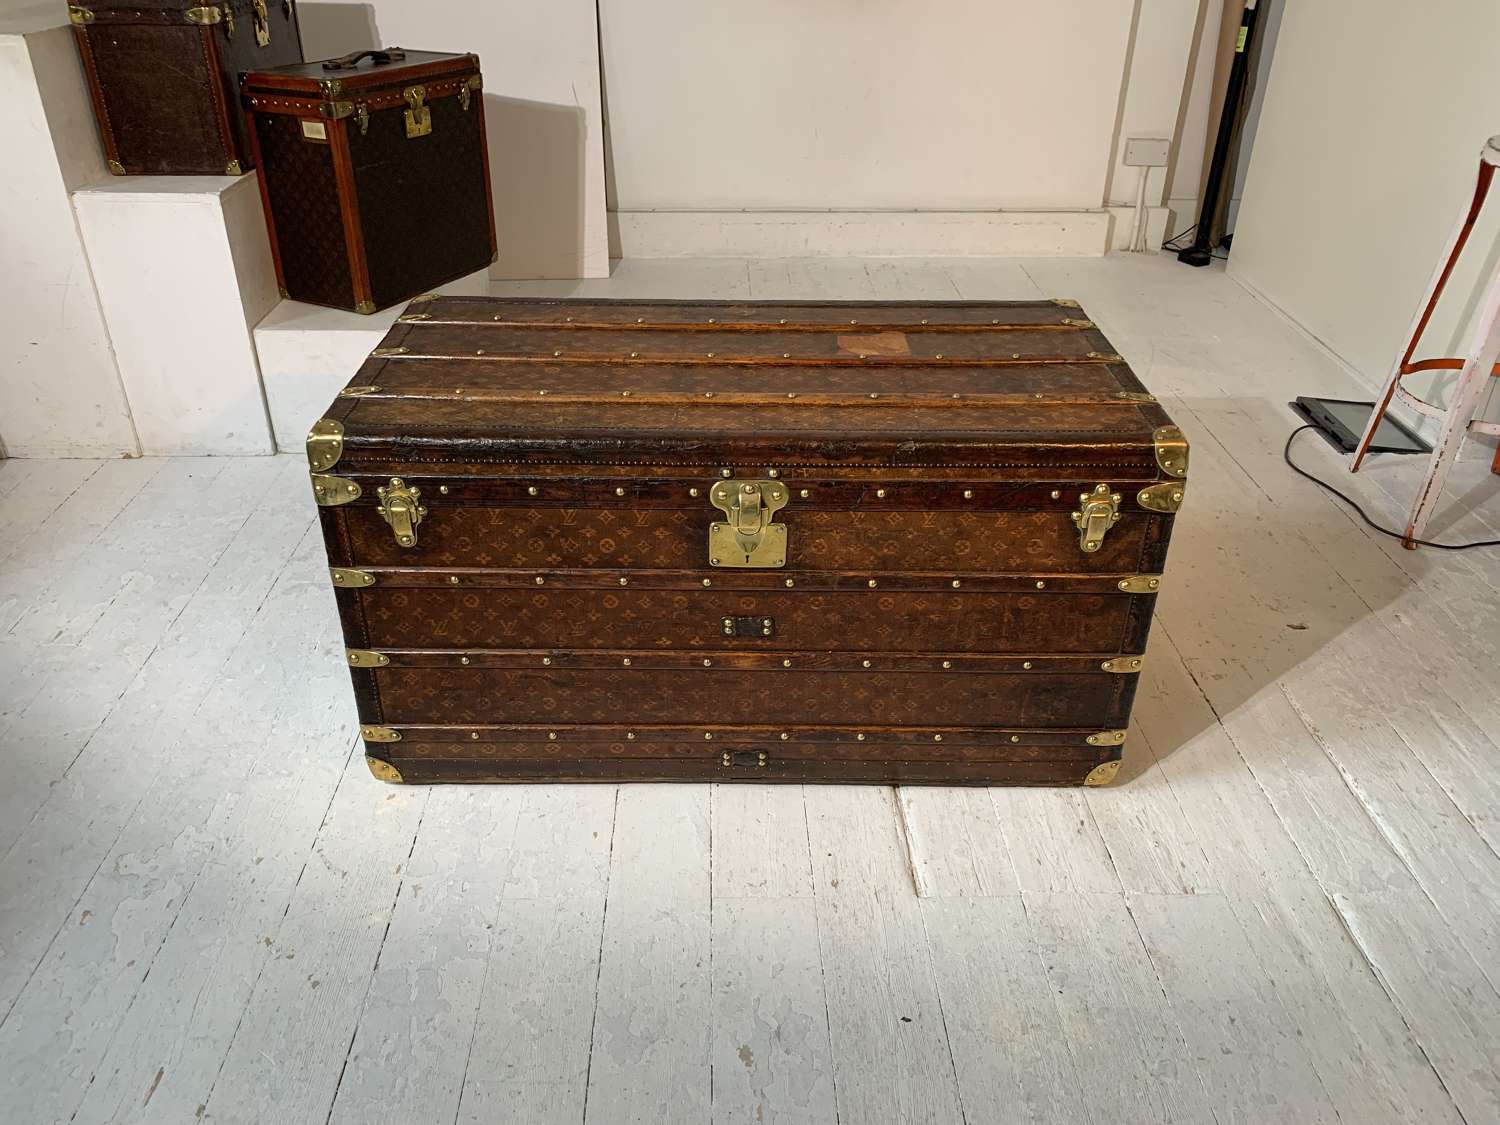 A Louis Vuitton Malle Courier trunk circa 1896